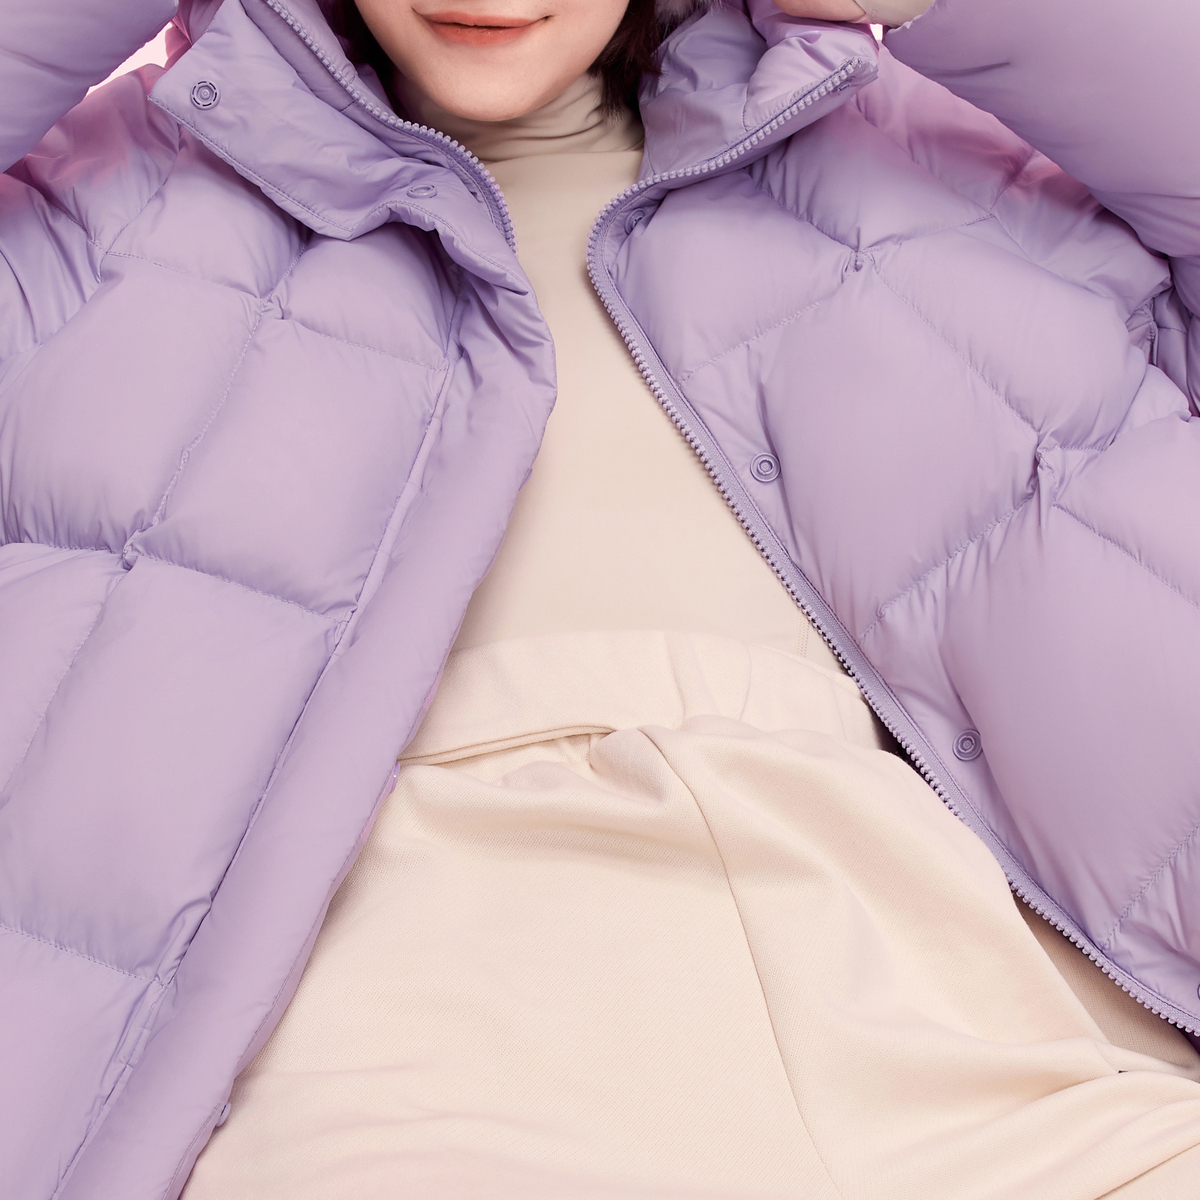 波司登新款冬季短款防螨多巴胺色系外套加厚保暖零压羽绒服女